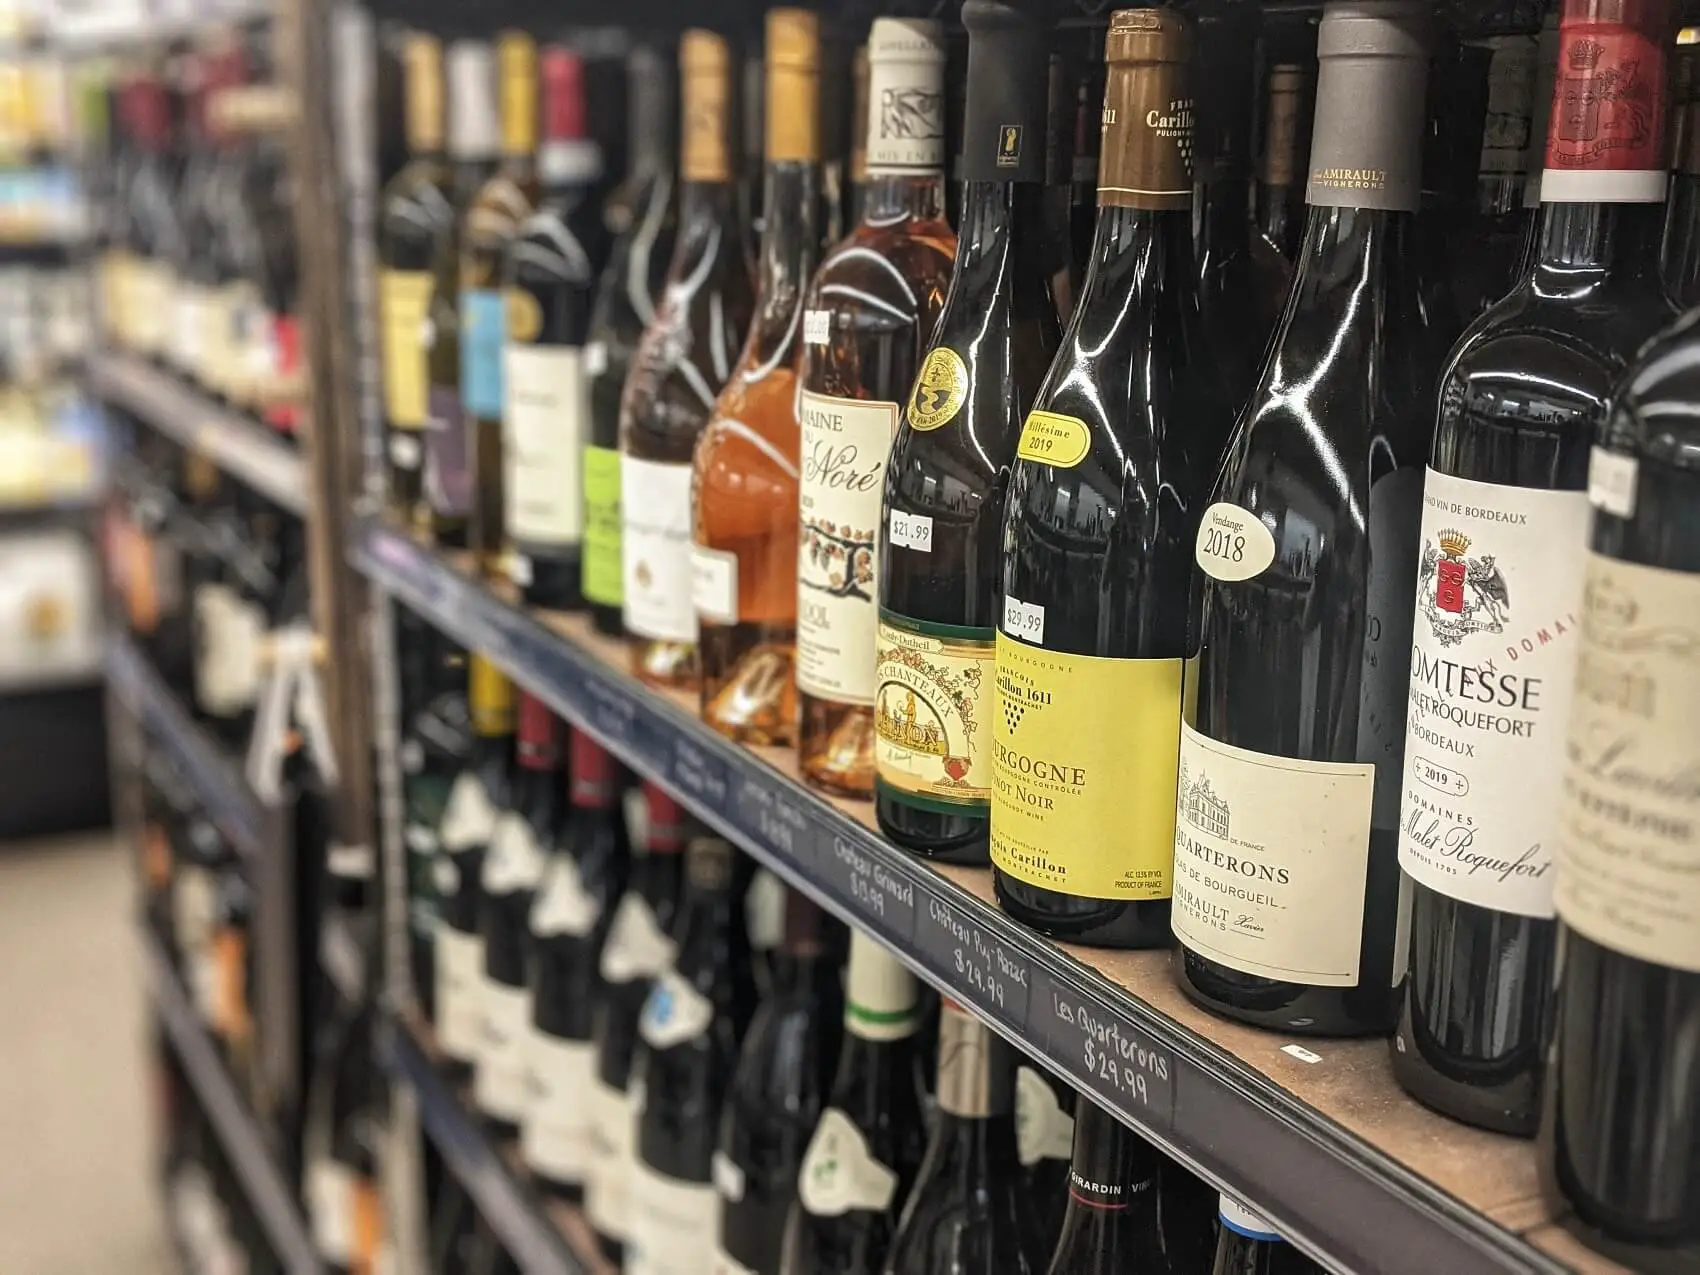 albarino vs pinot grigio - wine store shelf